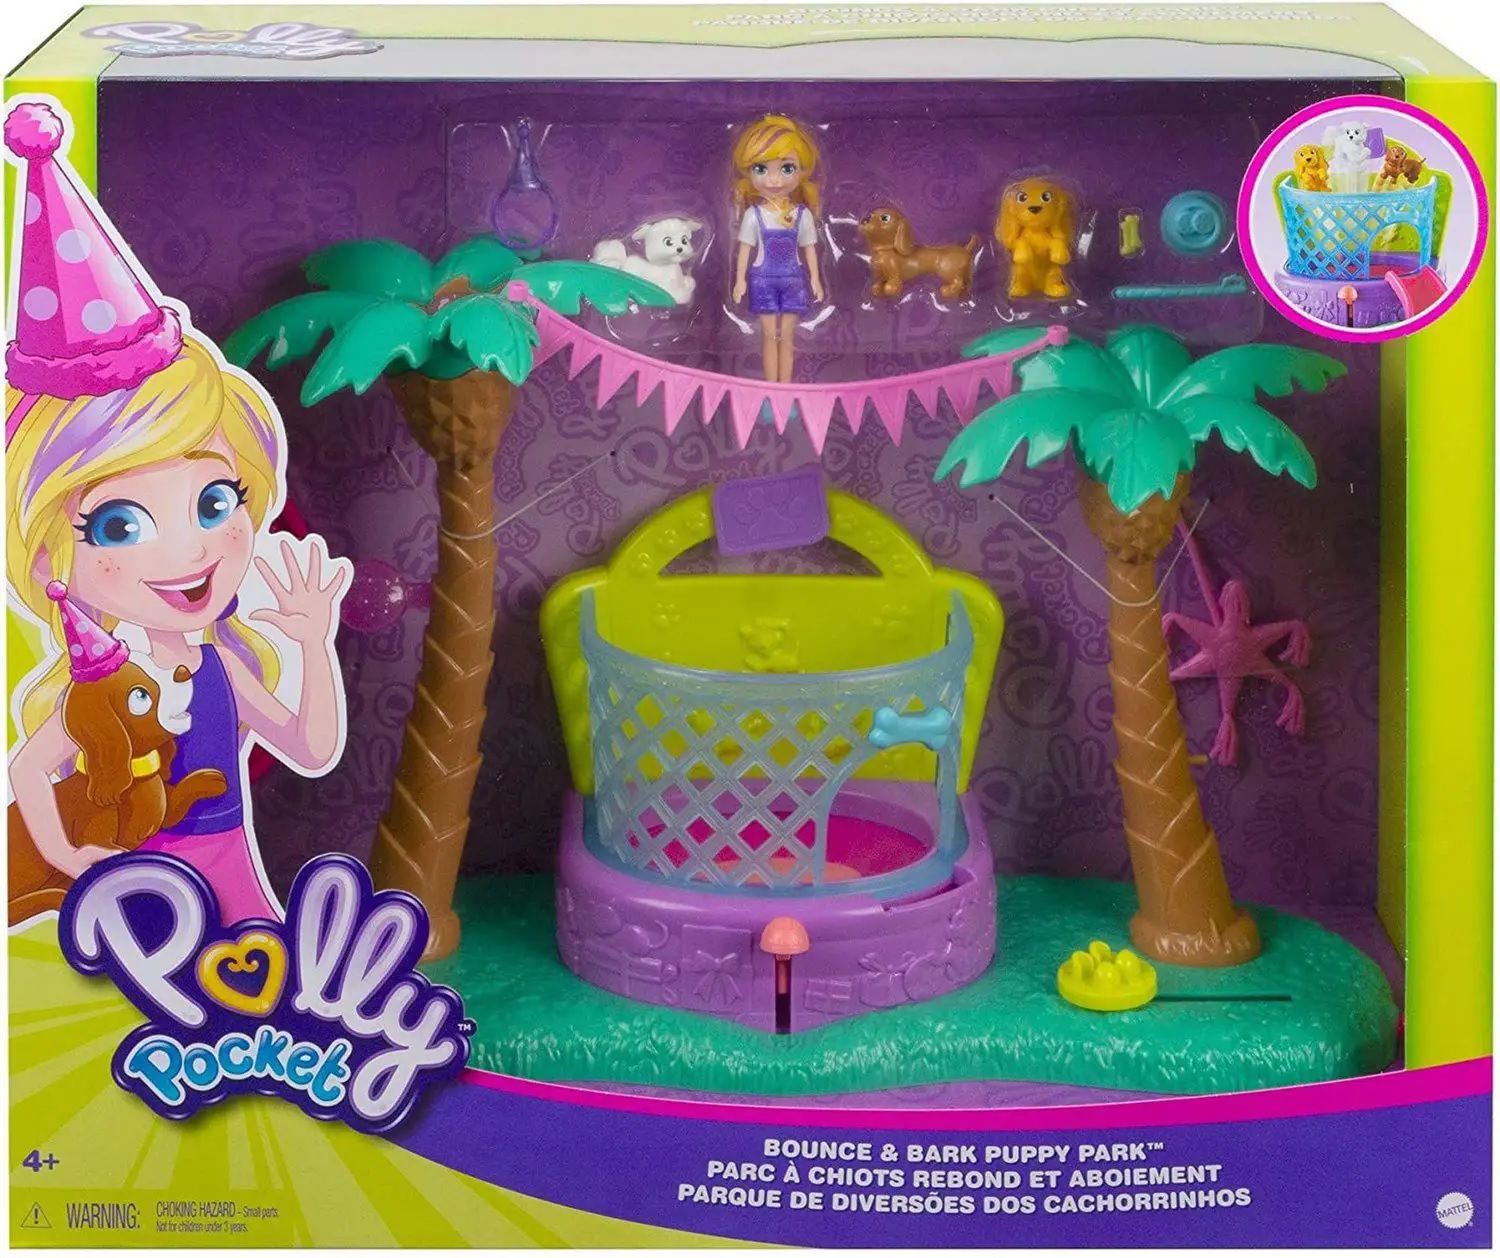 Playset - Polly Pocket - Polly e Shani - Caminhão de Sorvete - Mattel